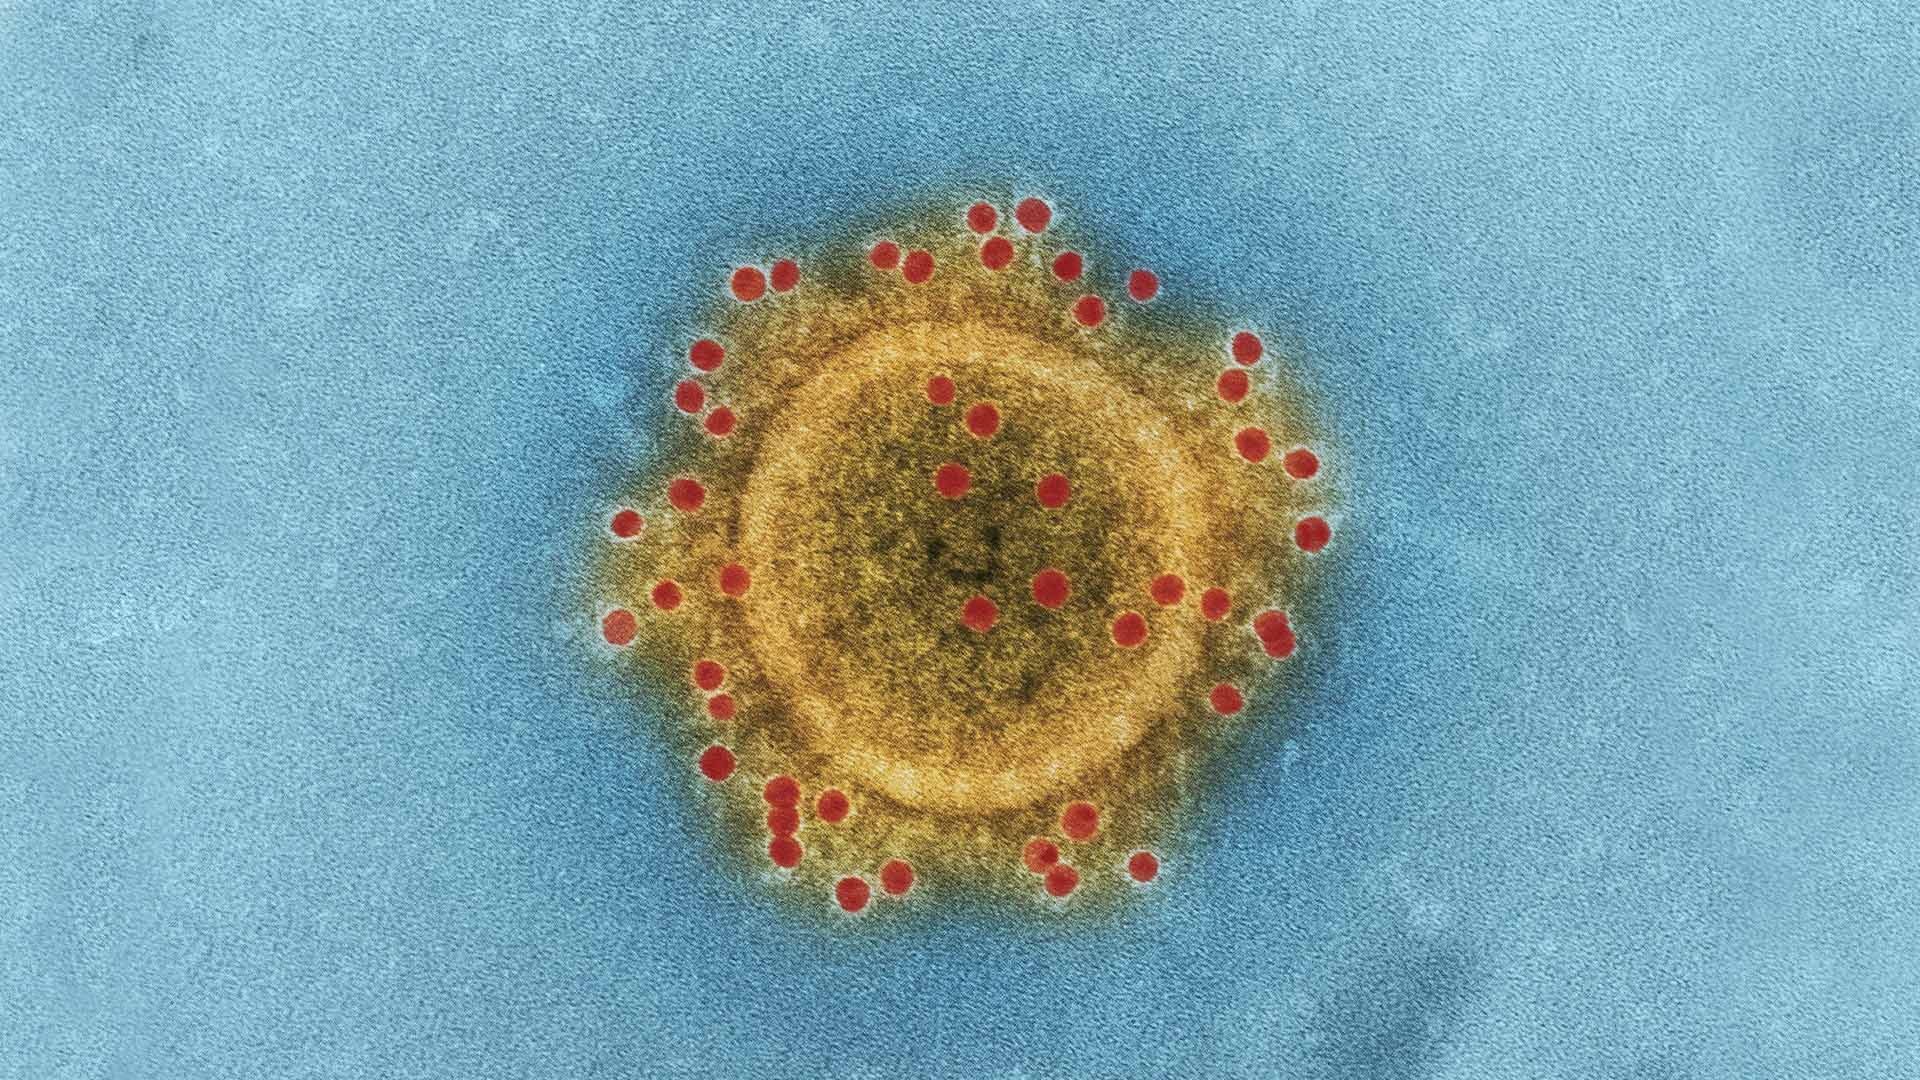 صورة فيروس ميكروسكوبي يثبت أنه أذكى من رافض للقاح لديه ٨٦ مليار عصبون